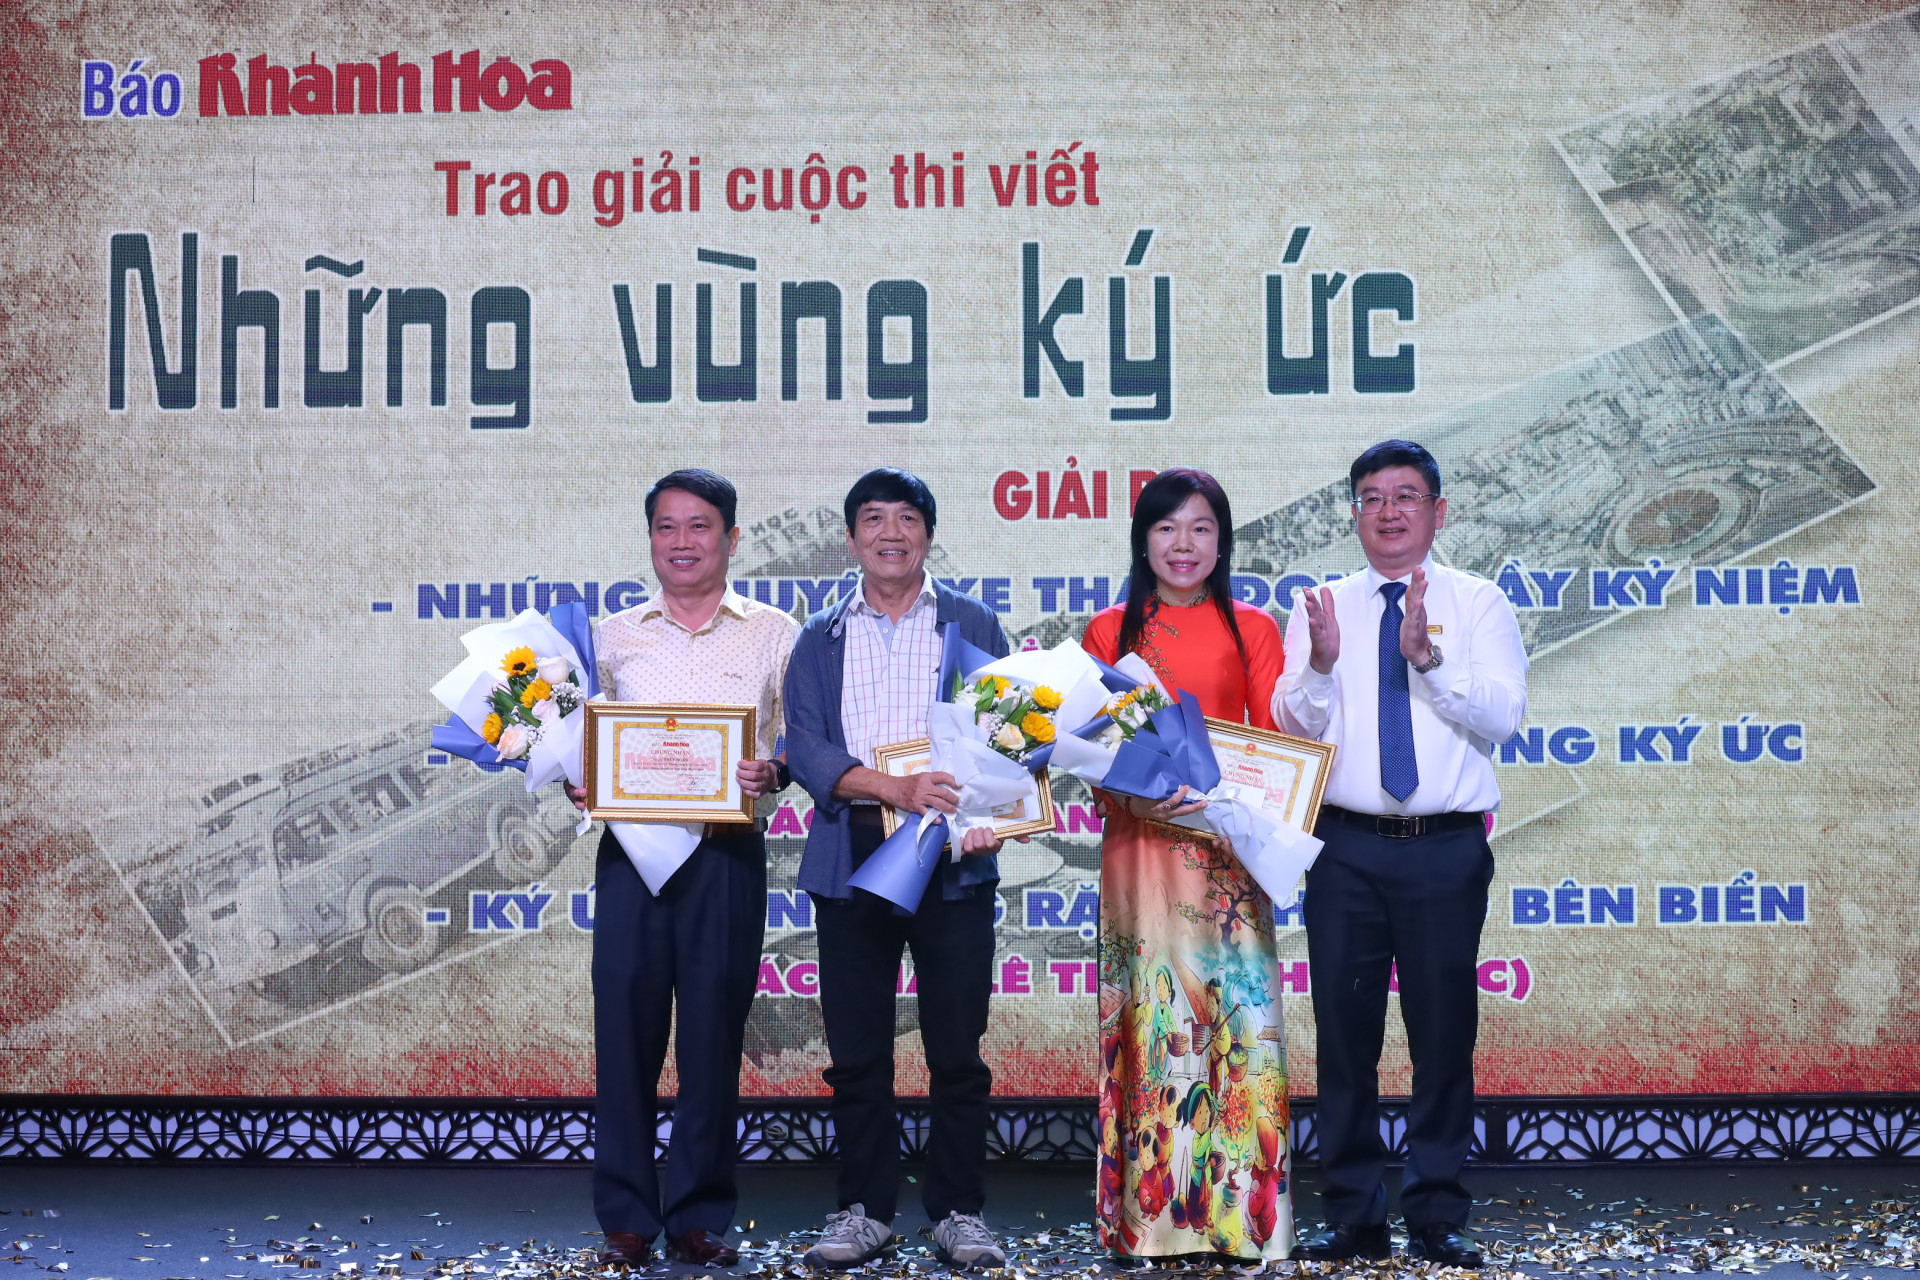 Đồng chí Lê Hoàng Triều - Phó Tổng Biên tập Báo Khánh Hòa trao giải cho các tác giả có tác phẩm đạt giải Ba cuộc thi viết “Những vùng ký ức”.